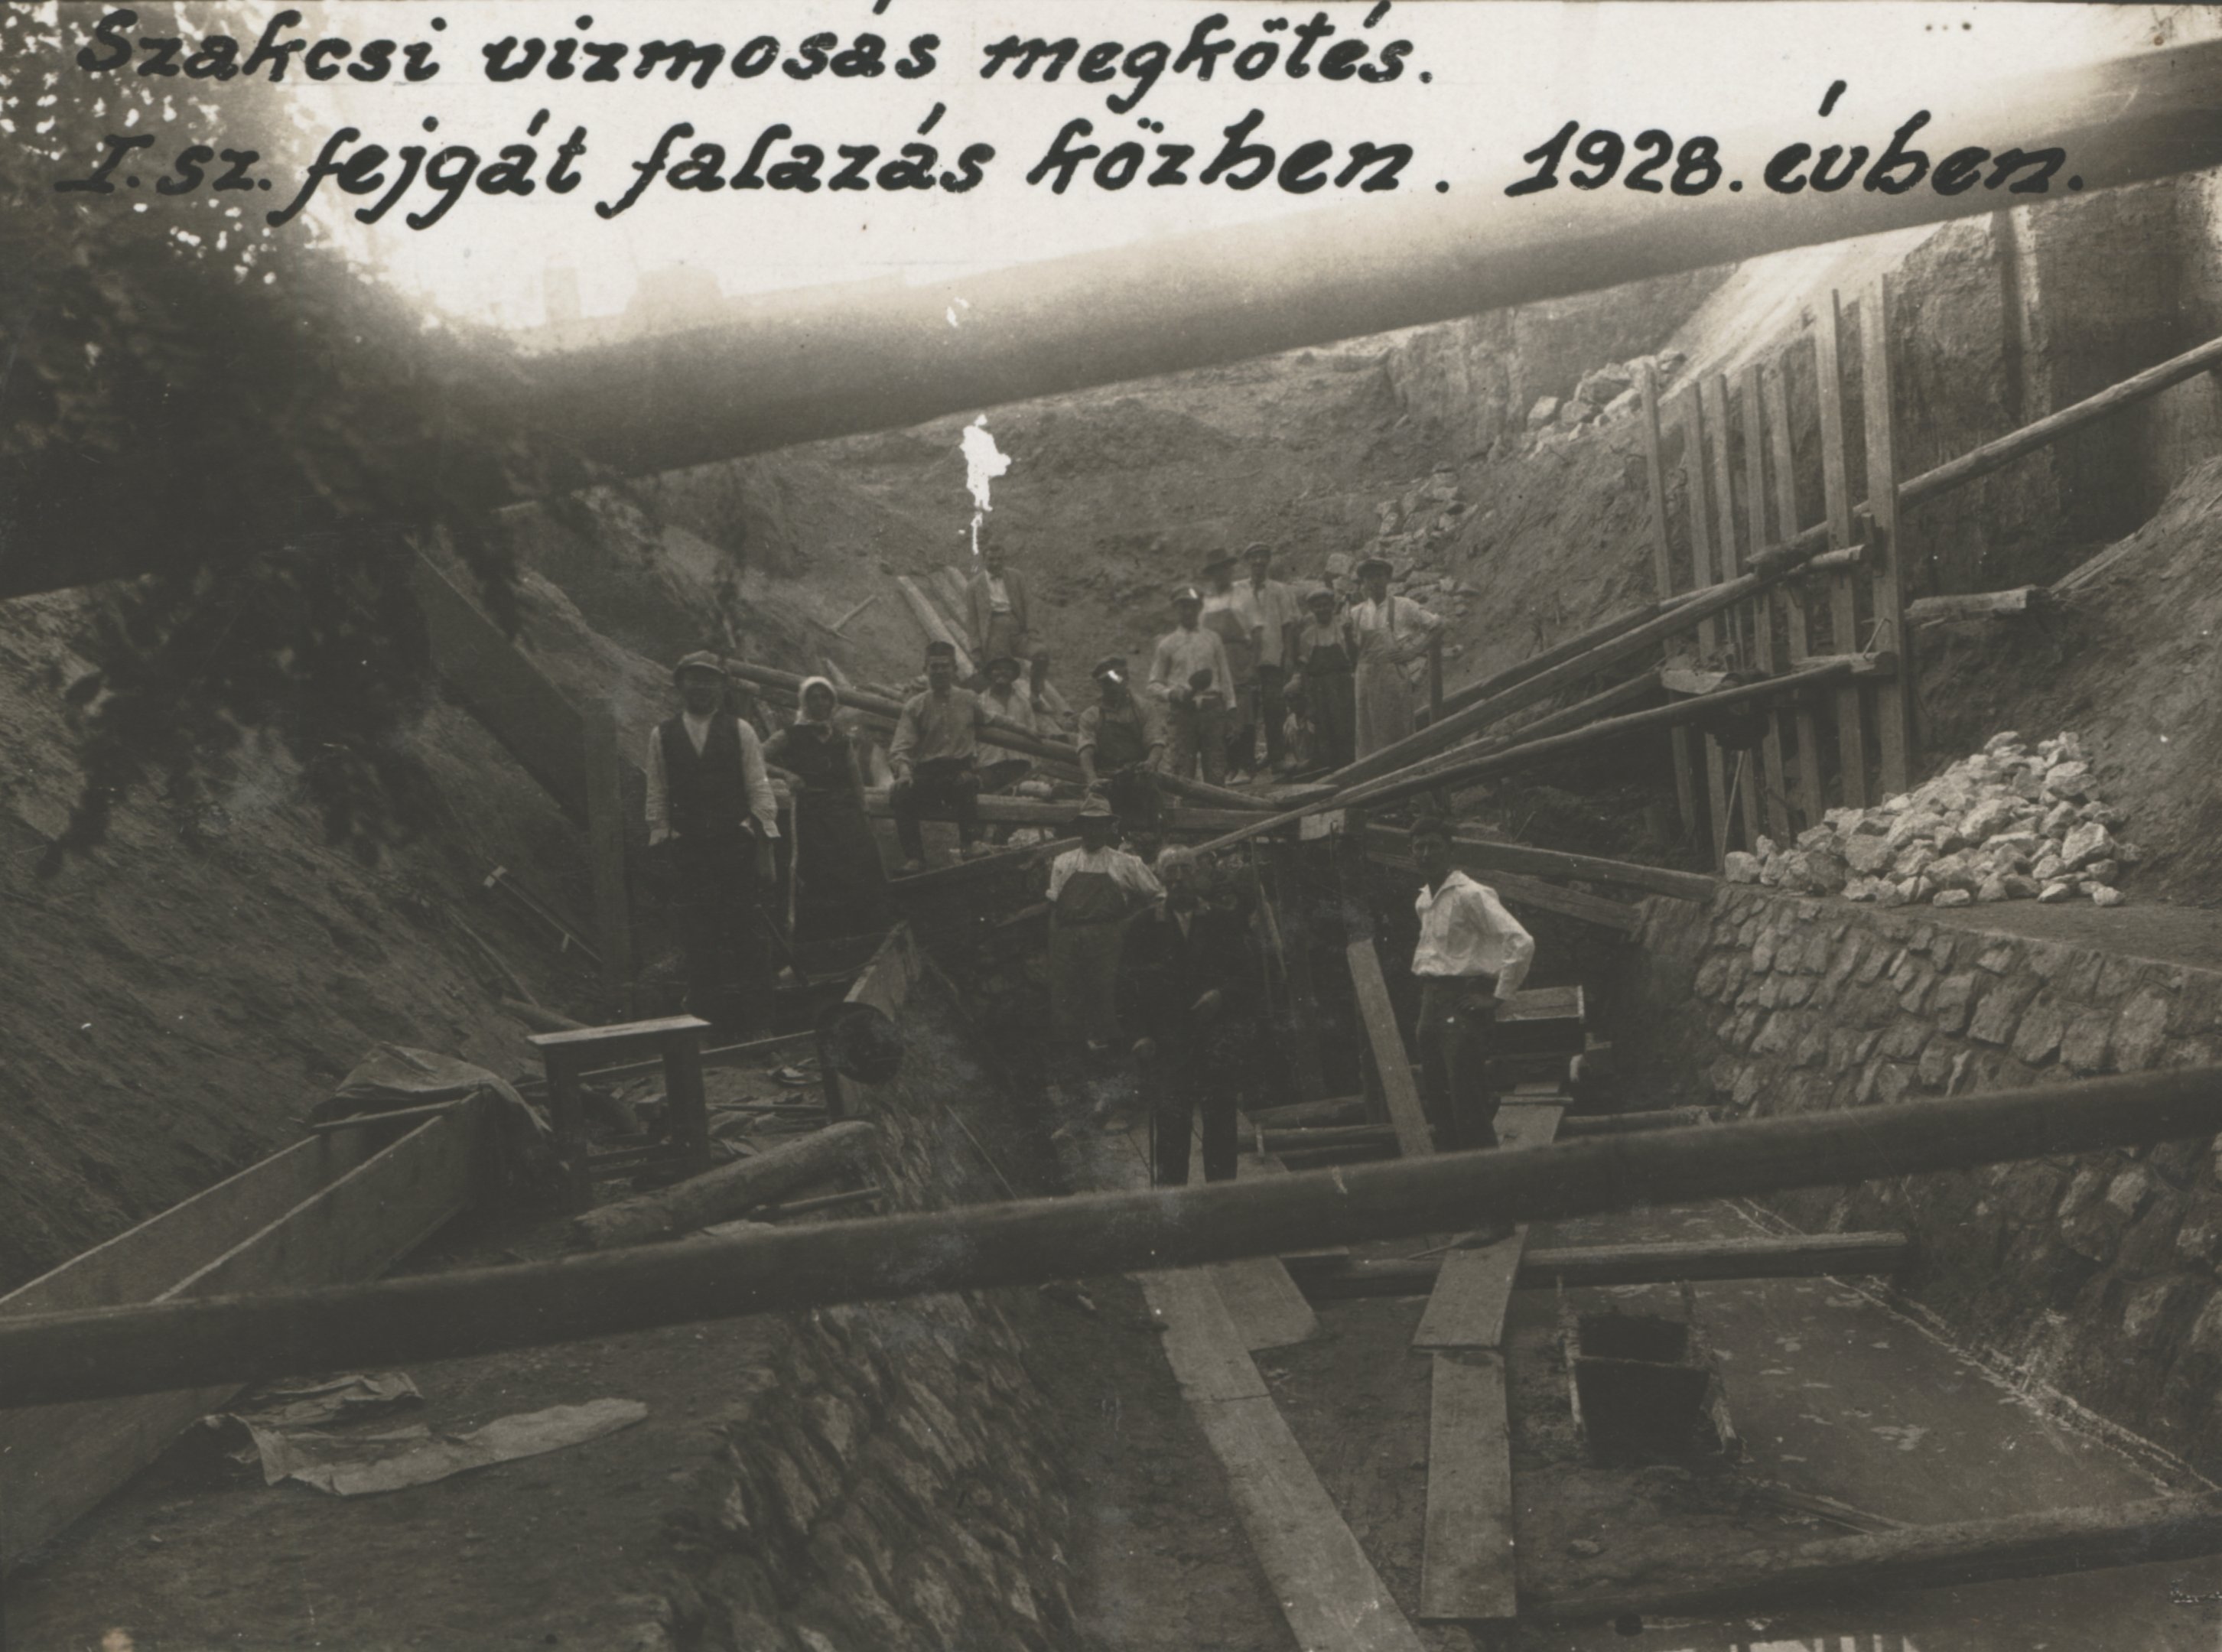 Szakcsi vízmosás megkötés. I. sz. fejgát falazás közben, 1928. évben (Magyar Környezetvédelmi és Vízügyi Múzeum - Duna Múzeum CC BY-NC-SA)